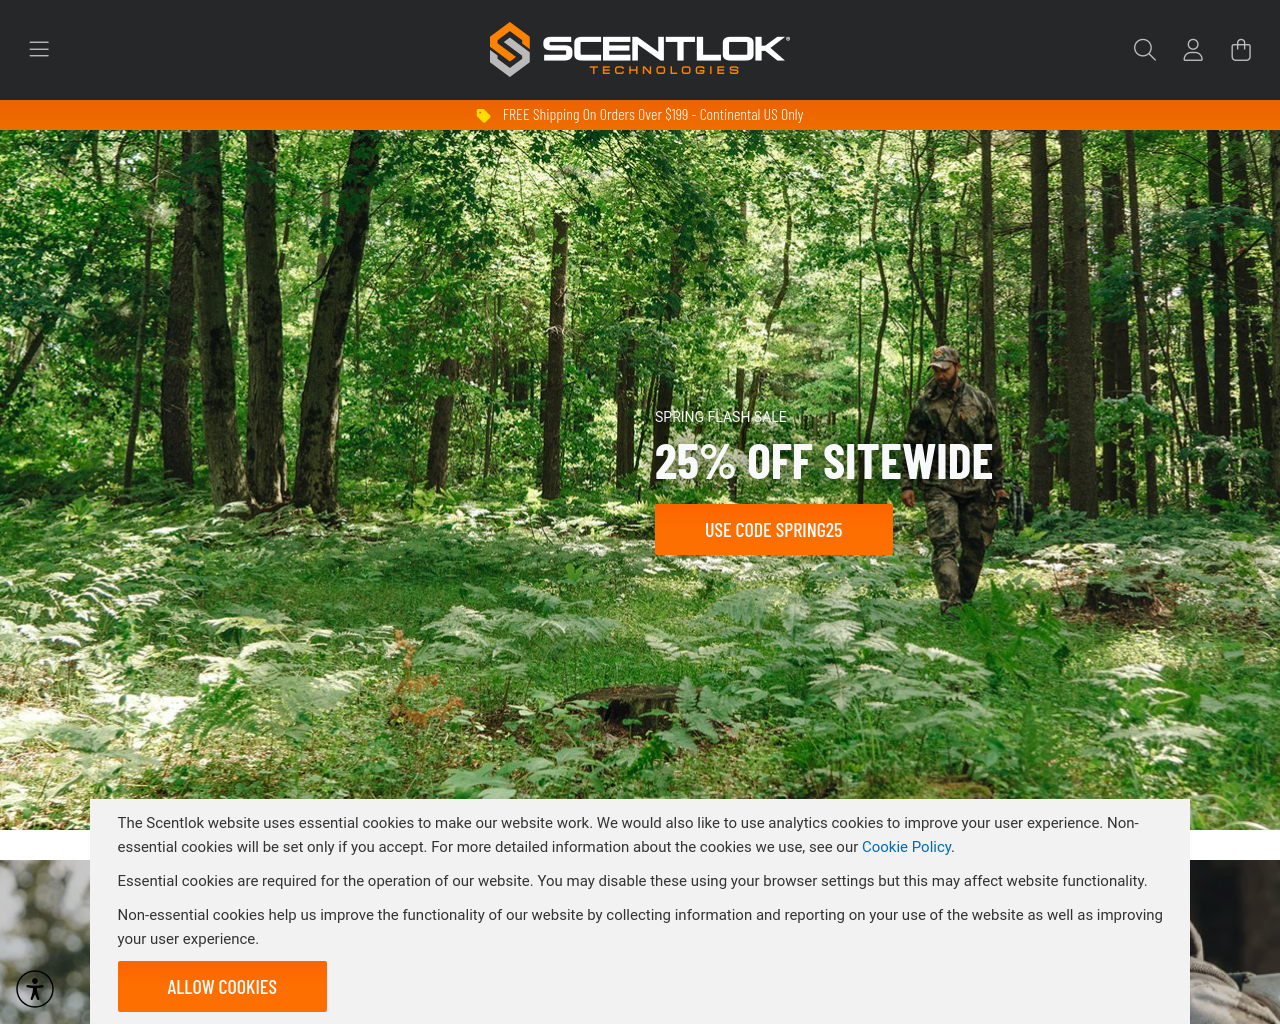 scentlok.com